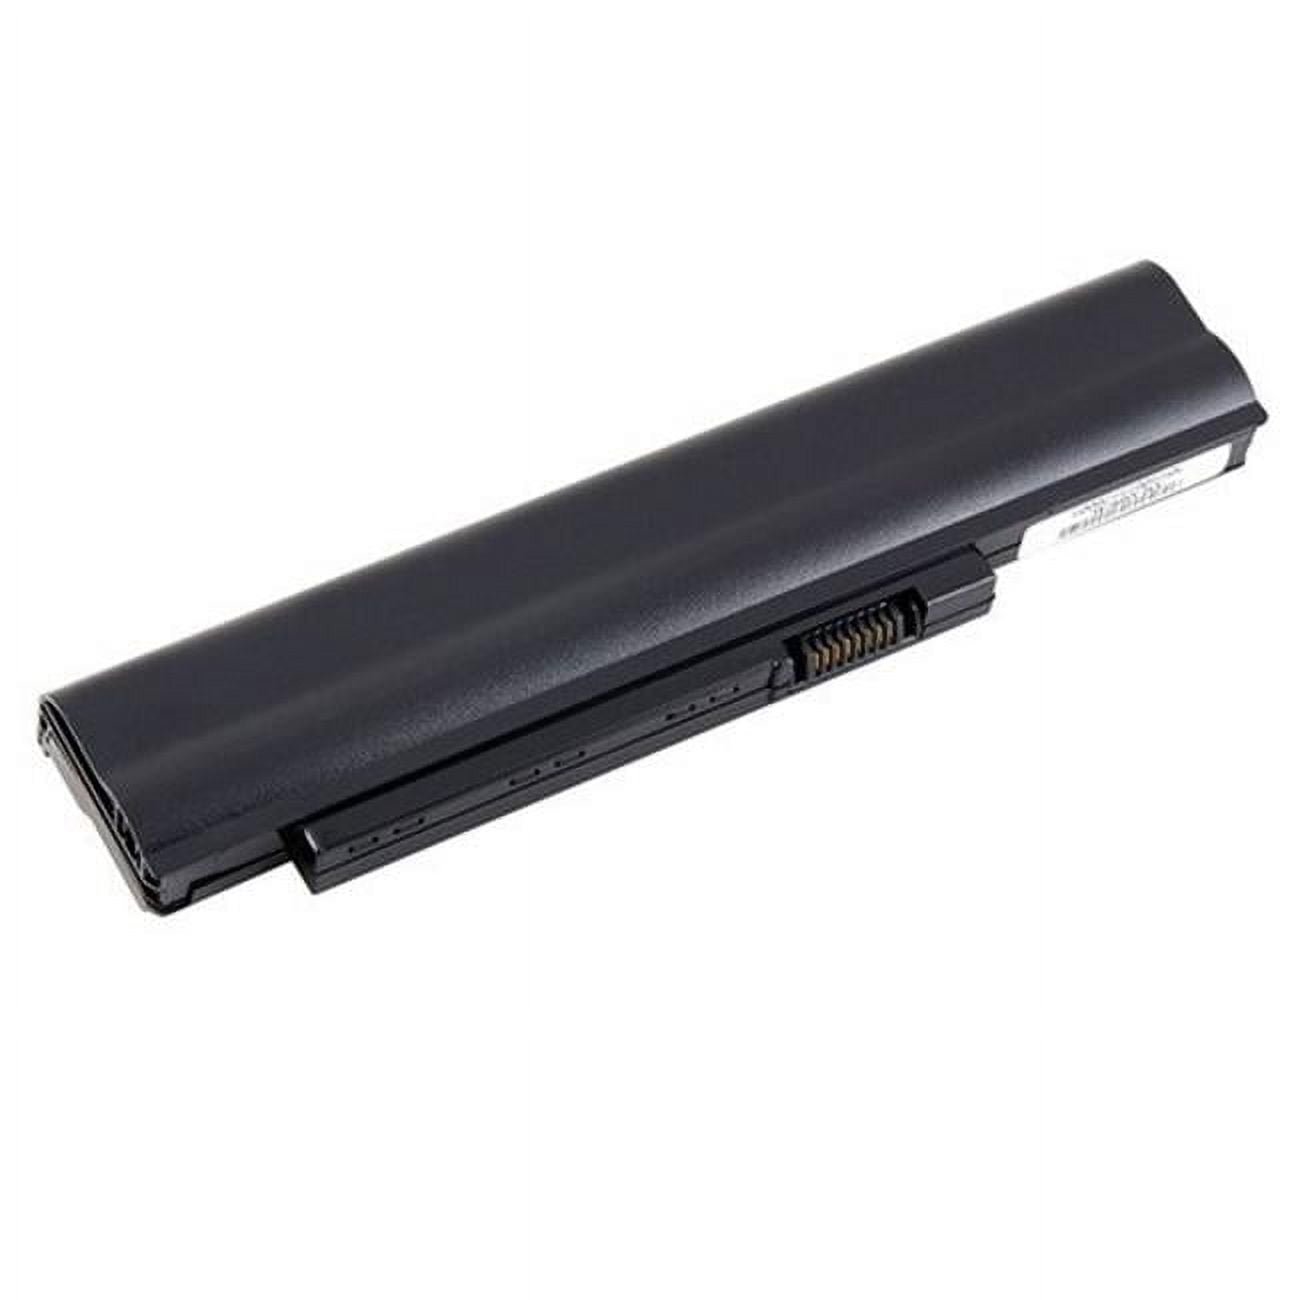 Dantona NM-AS09C31 Replacement Long Life Laptop Battery for Acer Extensa -  Dantona Industries